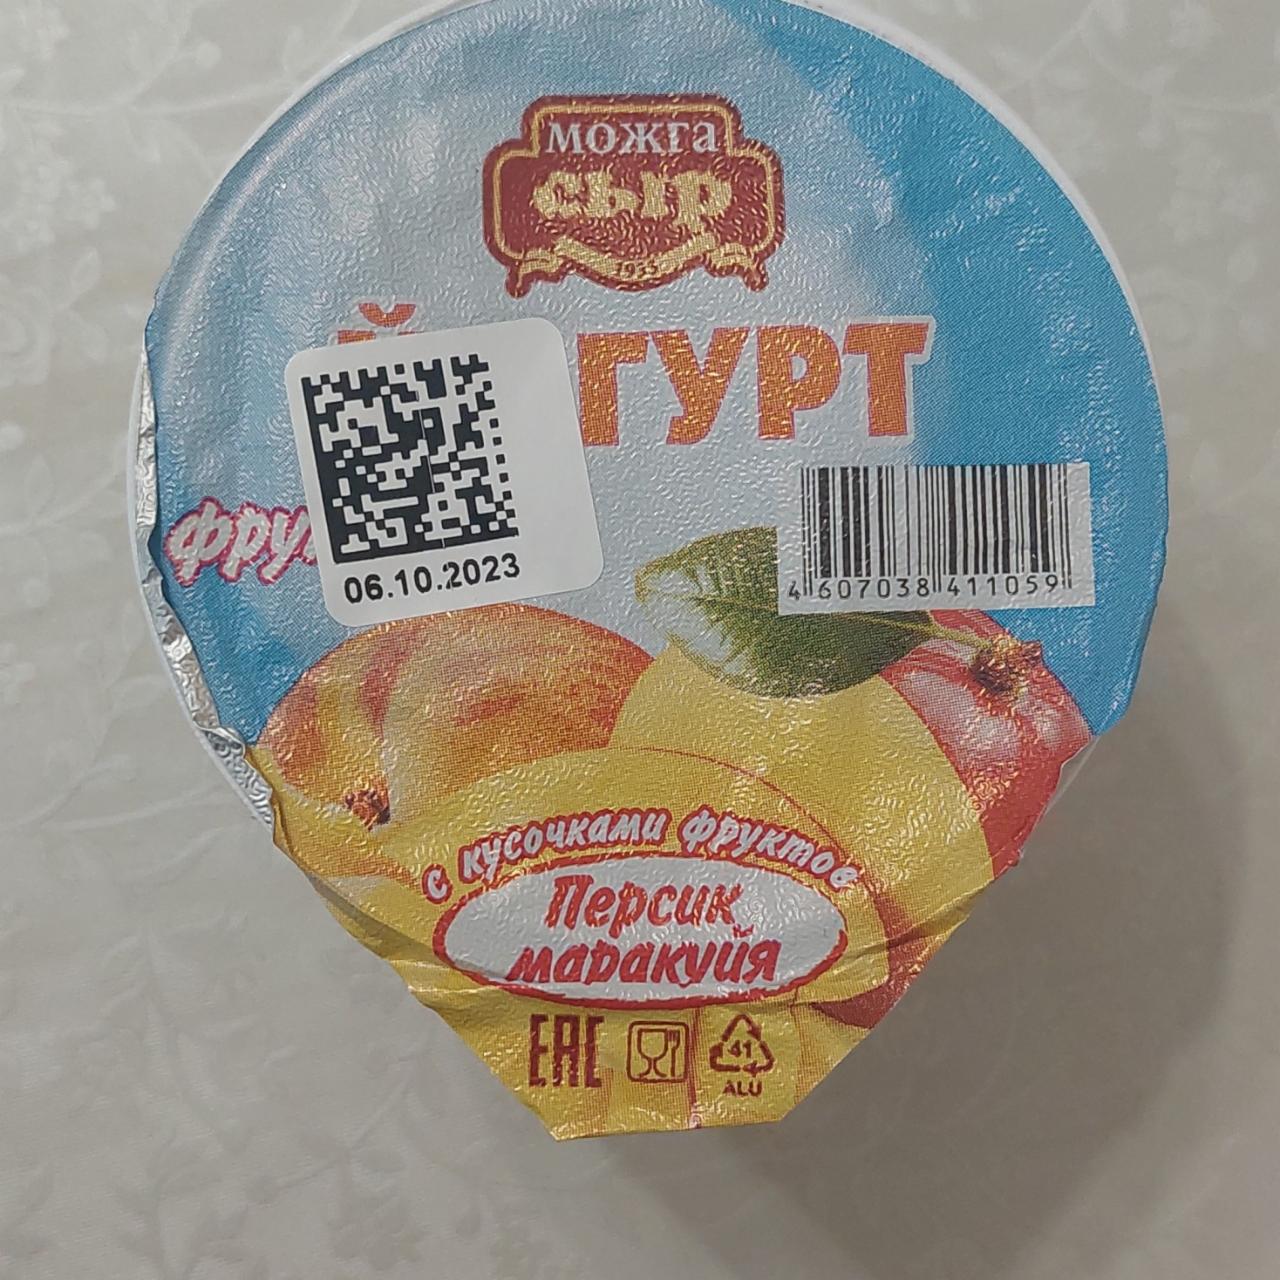 Фото - Йогурт персик-маракуйя Можга сыр